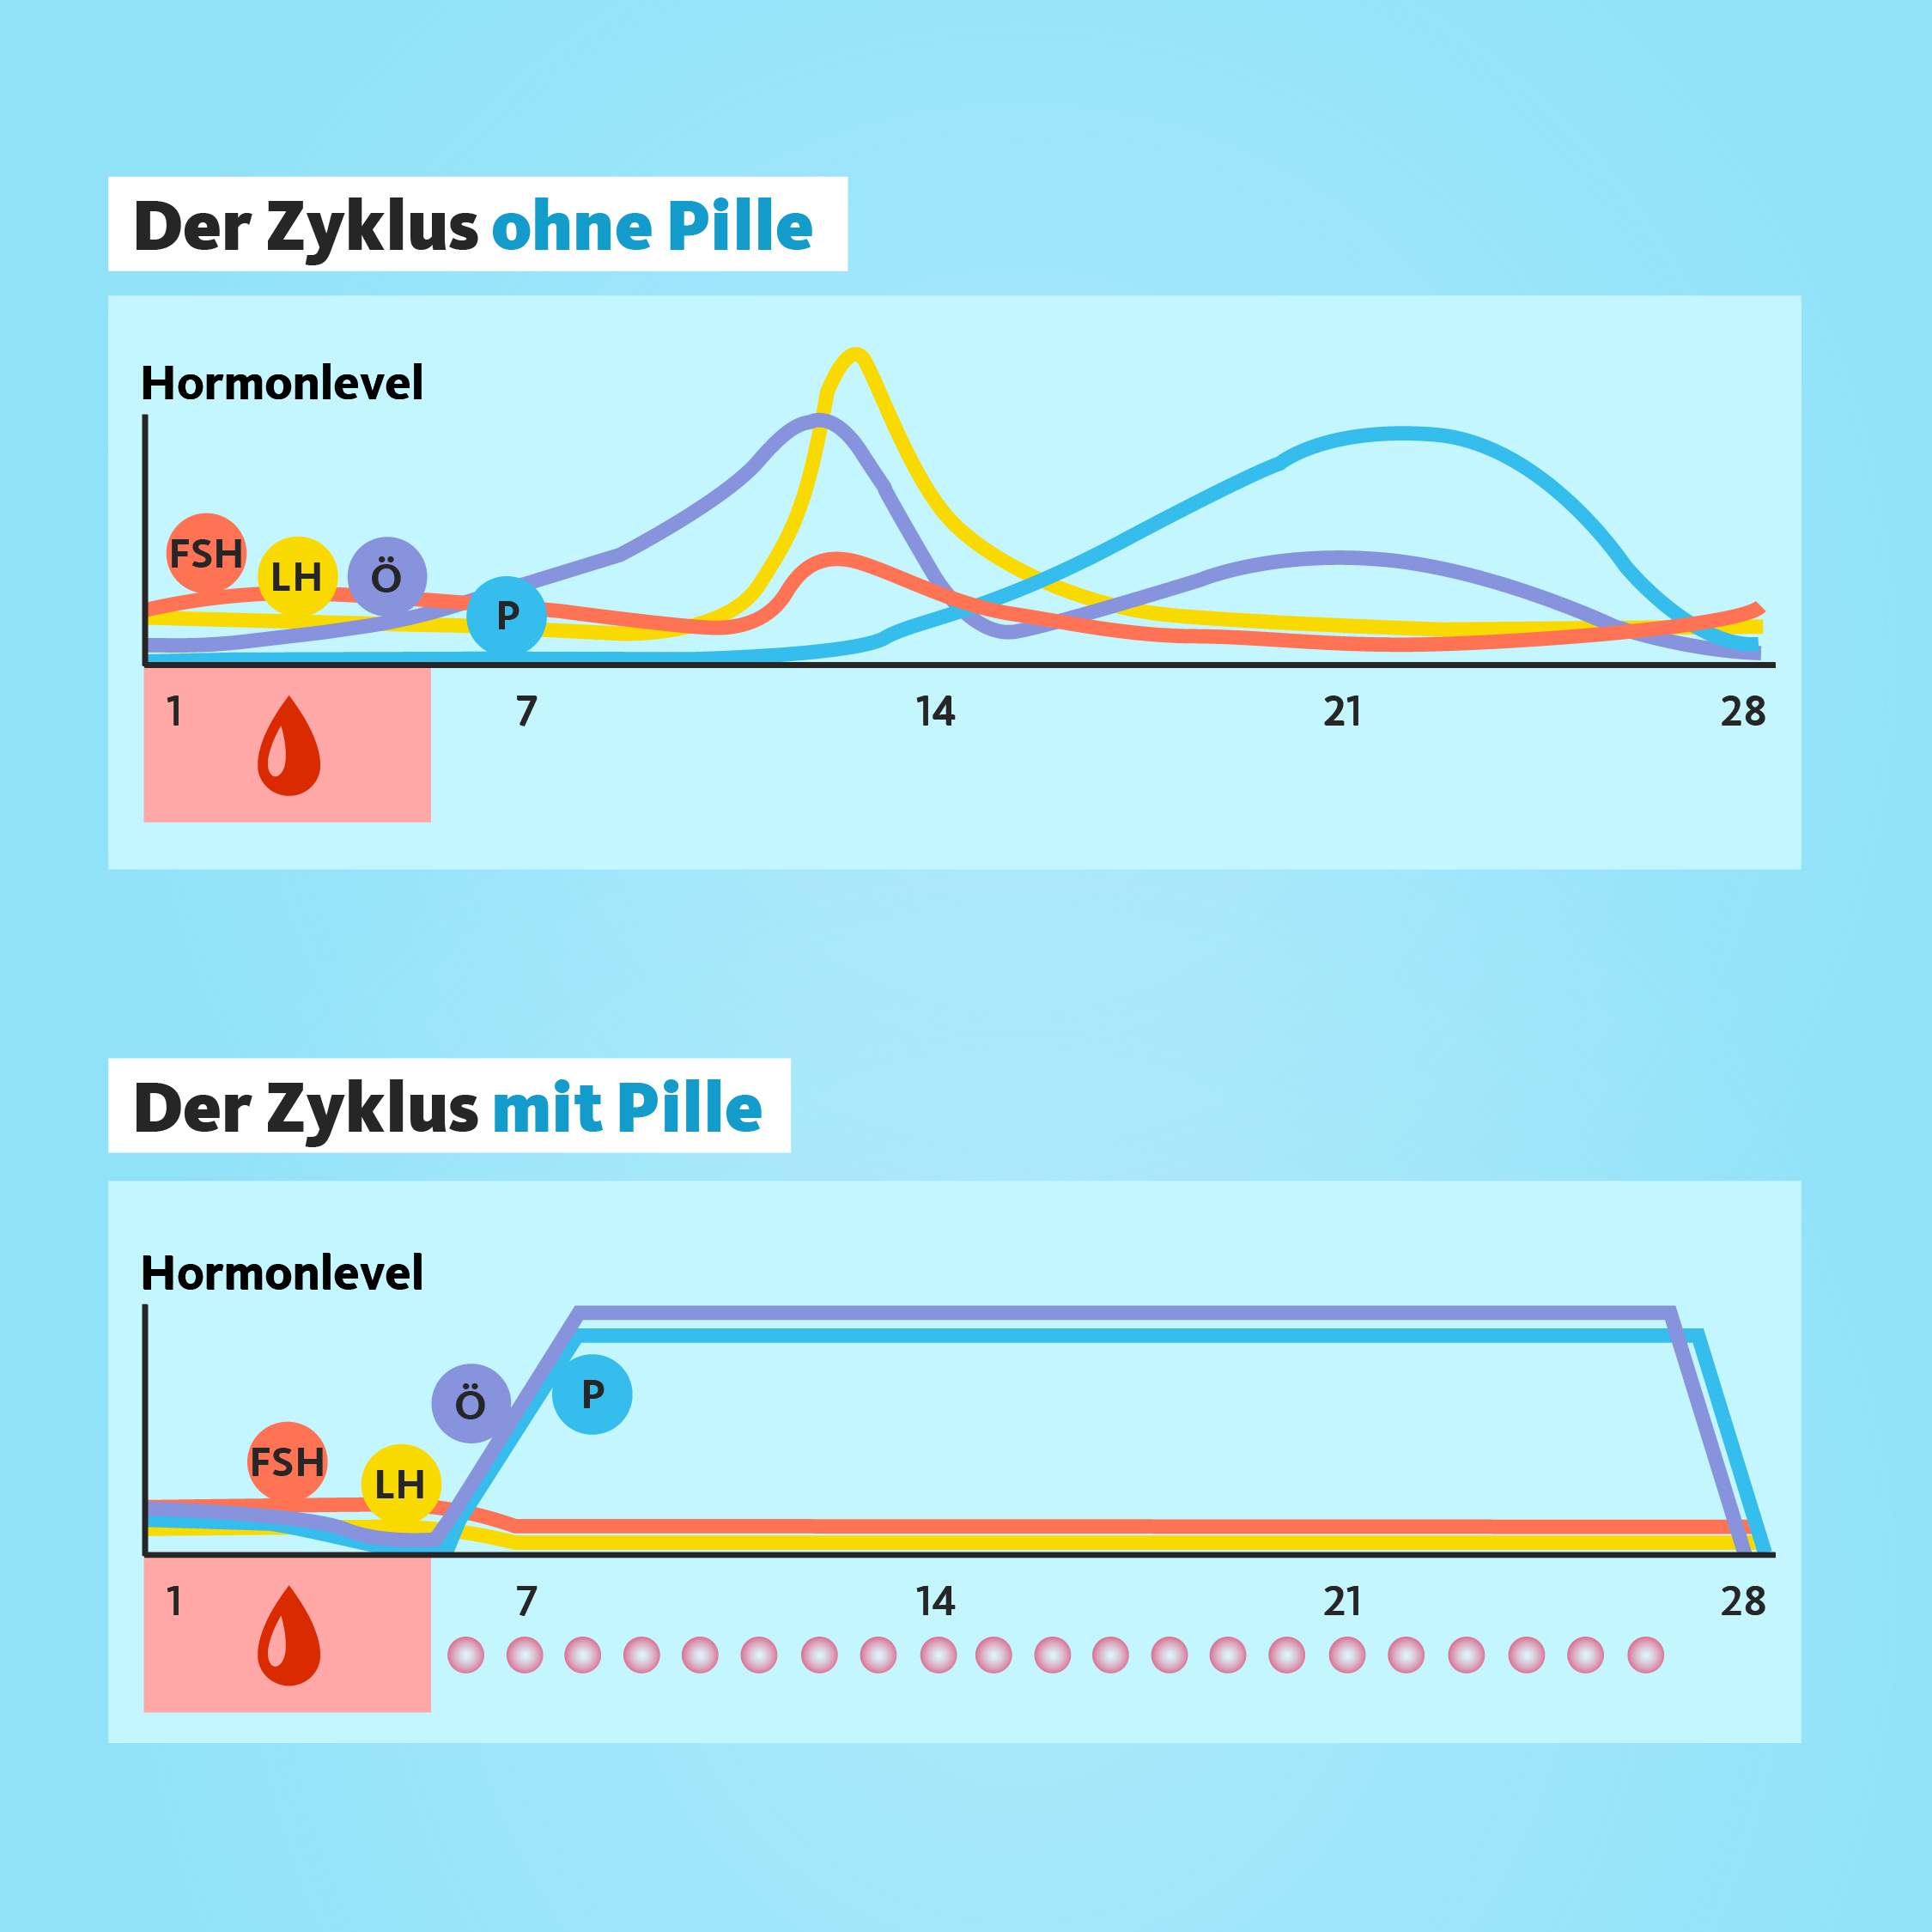 Grafiken, die den Zyklus ohne und mit Pille zeigen. Im Zyklus ohne Pille schwanken die vier Zyklushormone stark, im Zyklus mit Pille sind sie sehr konstant.